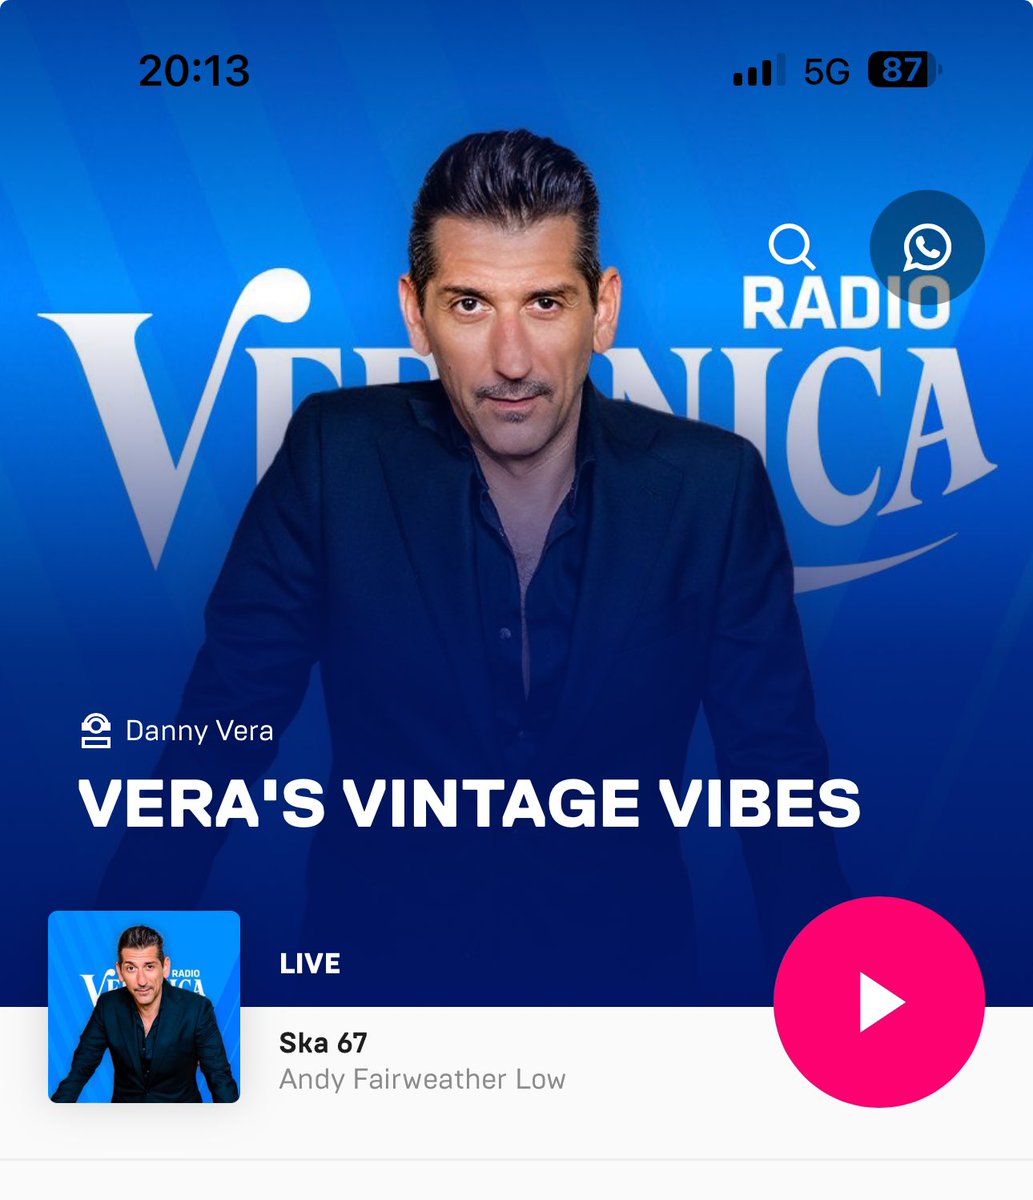 Now @radioveronica !!!